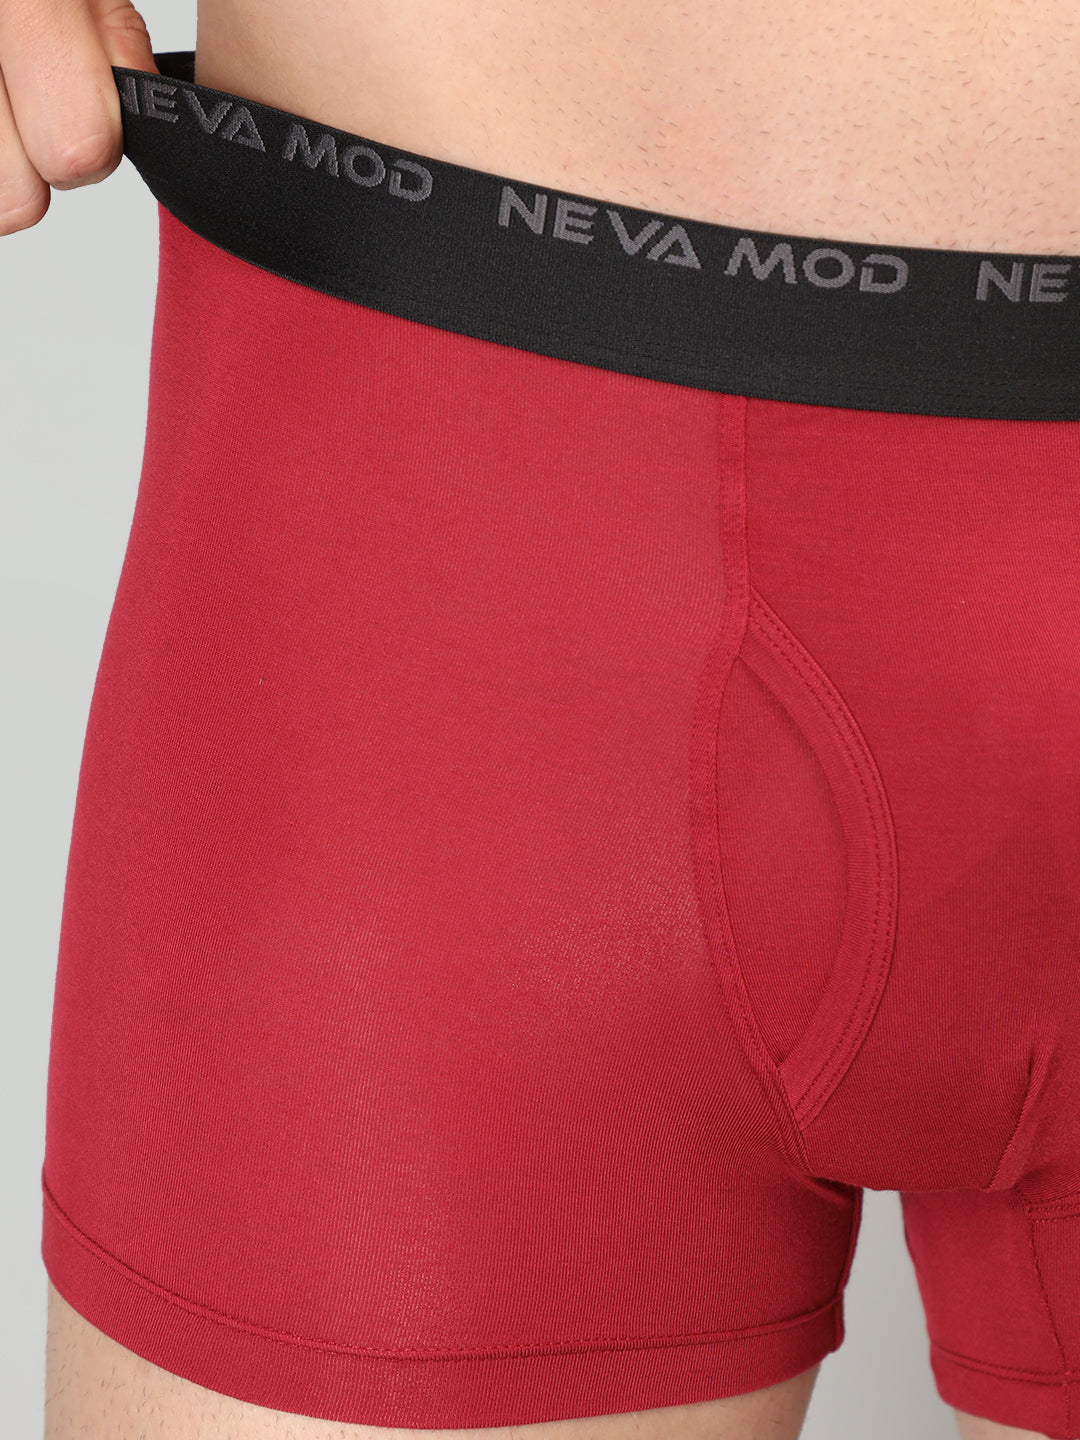 Neva Modal Solid Trunk for Men Elasticated Waistband Pack of 3